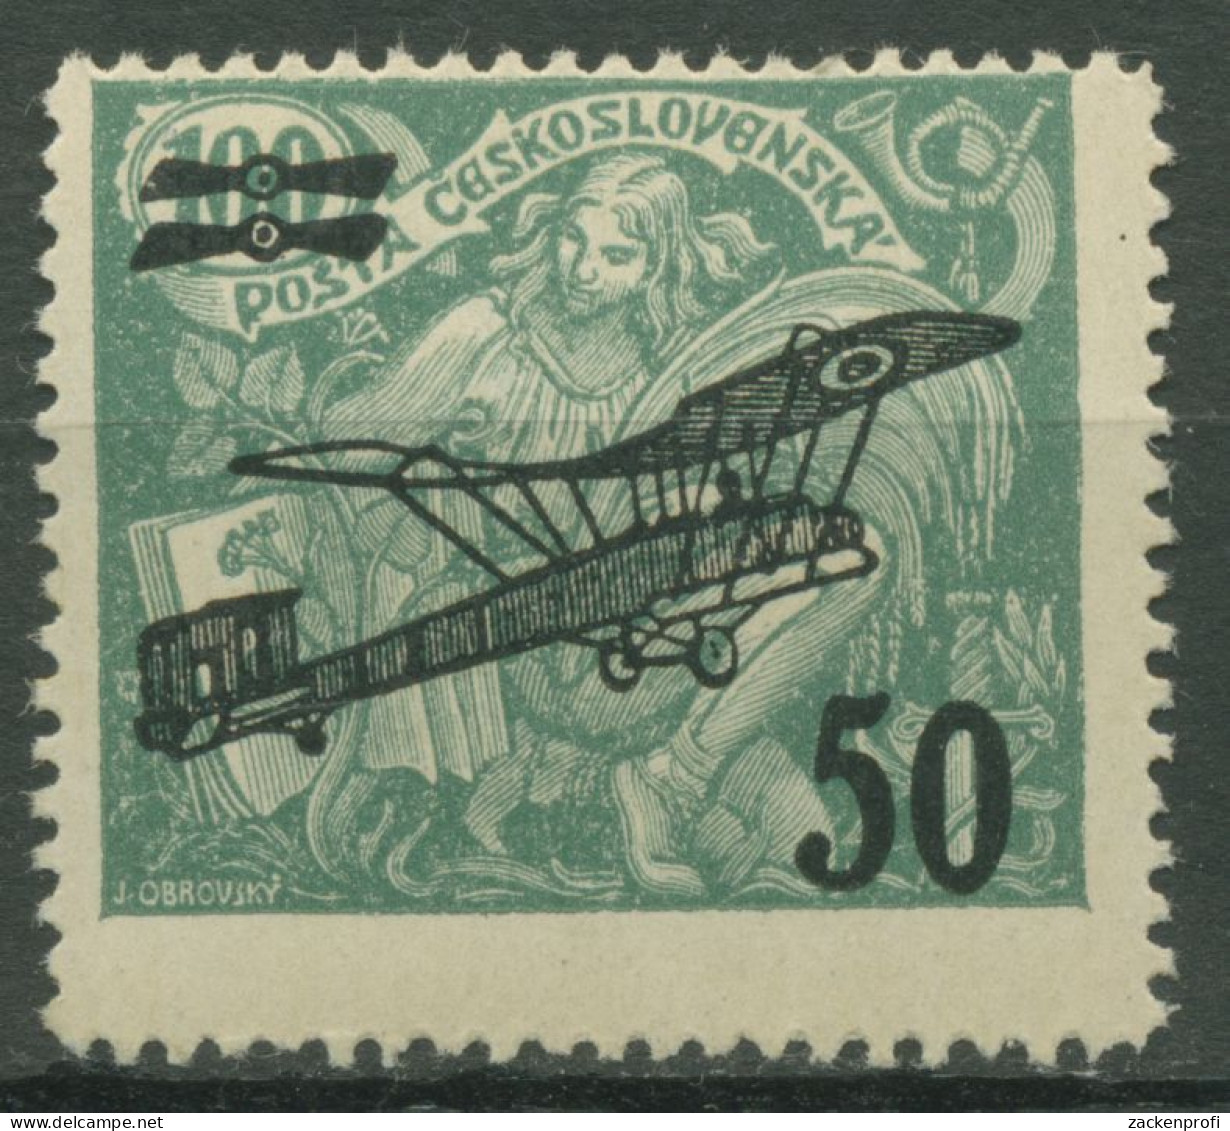 Tschechoslowakei 1922 Allegorie Mit Flugzeug-Aufdruck 199 Postfrisch - Unused Stamps